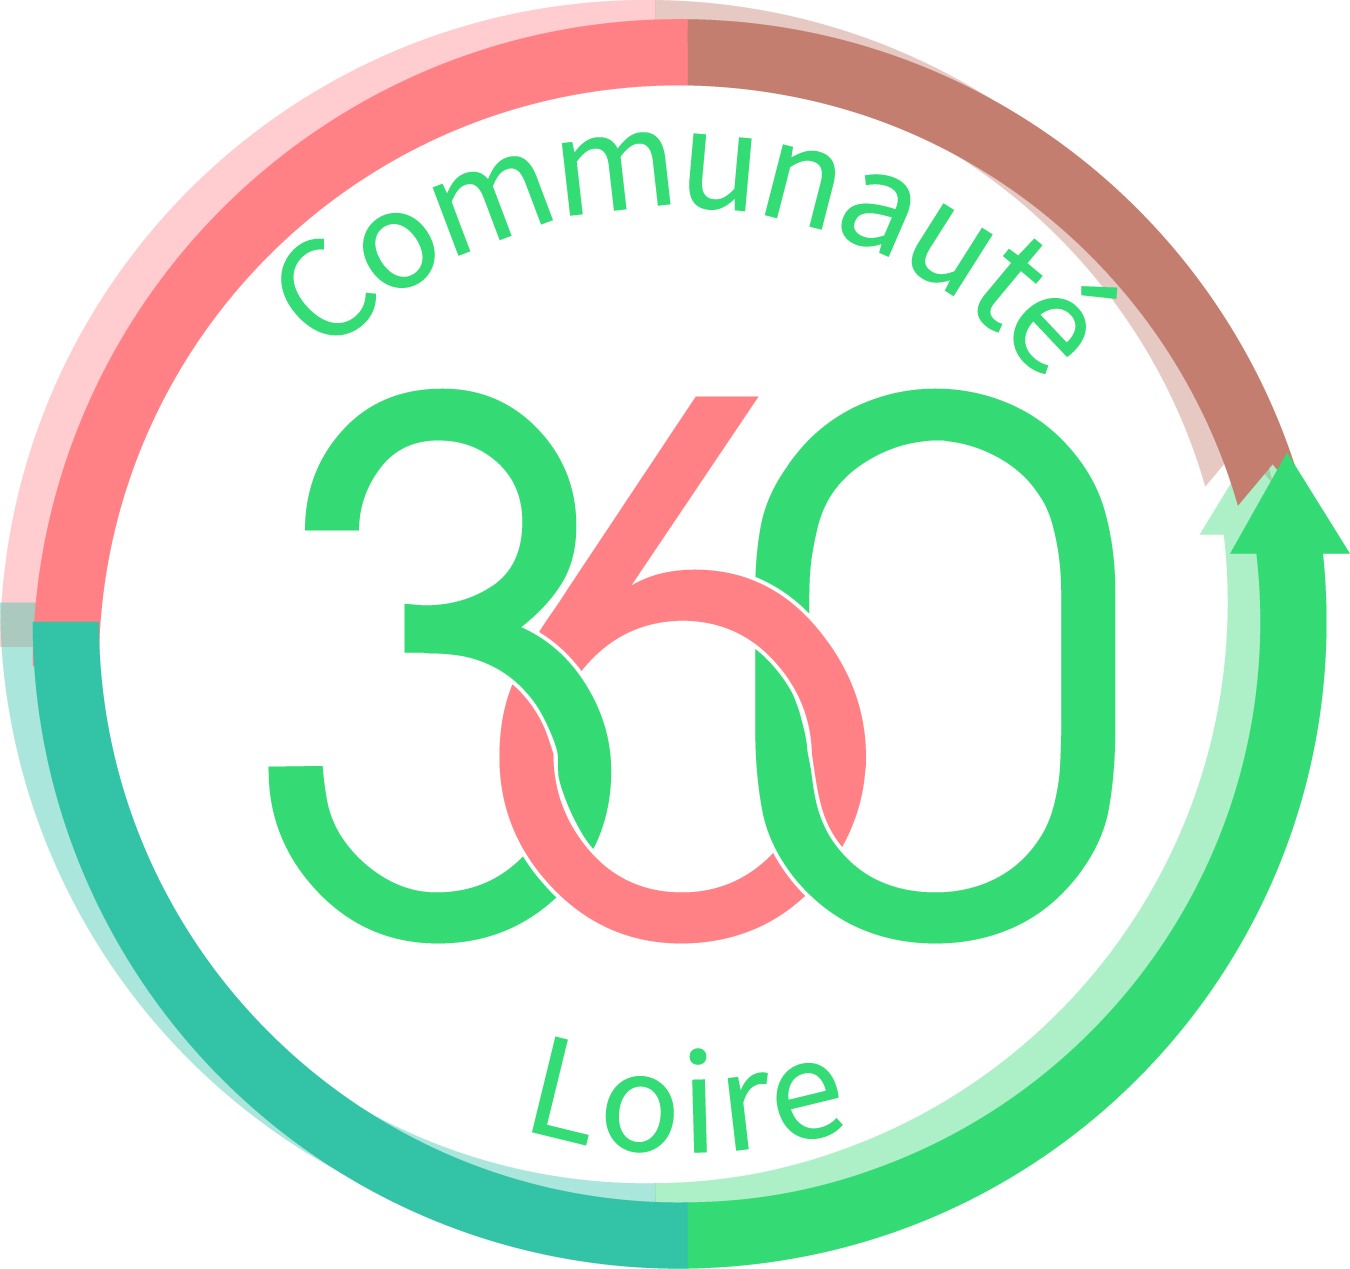 Communauté 360 Loire